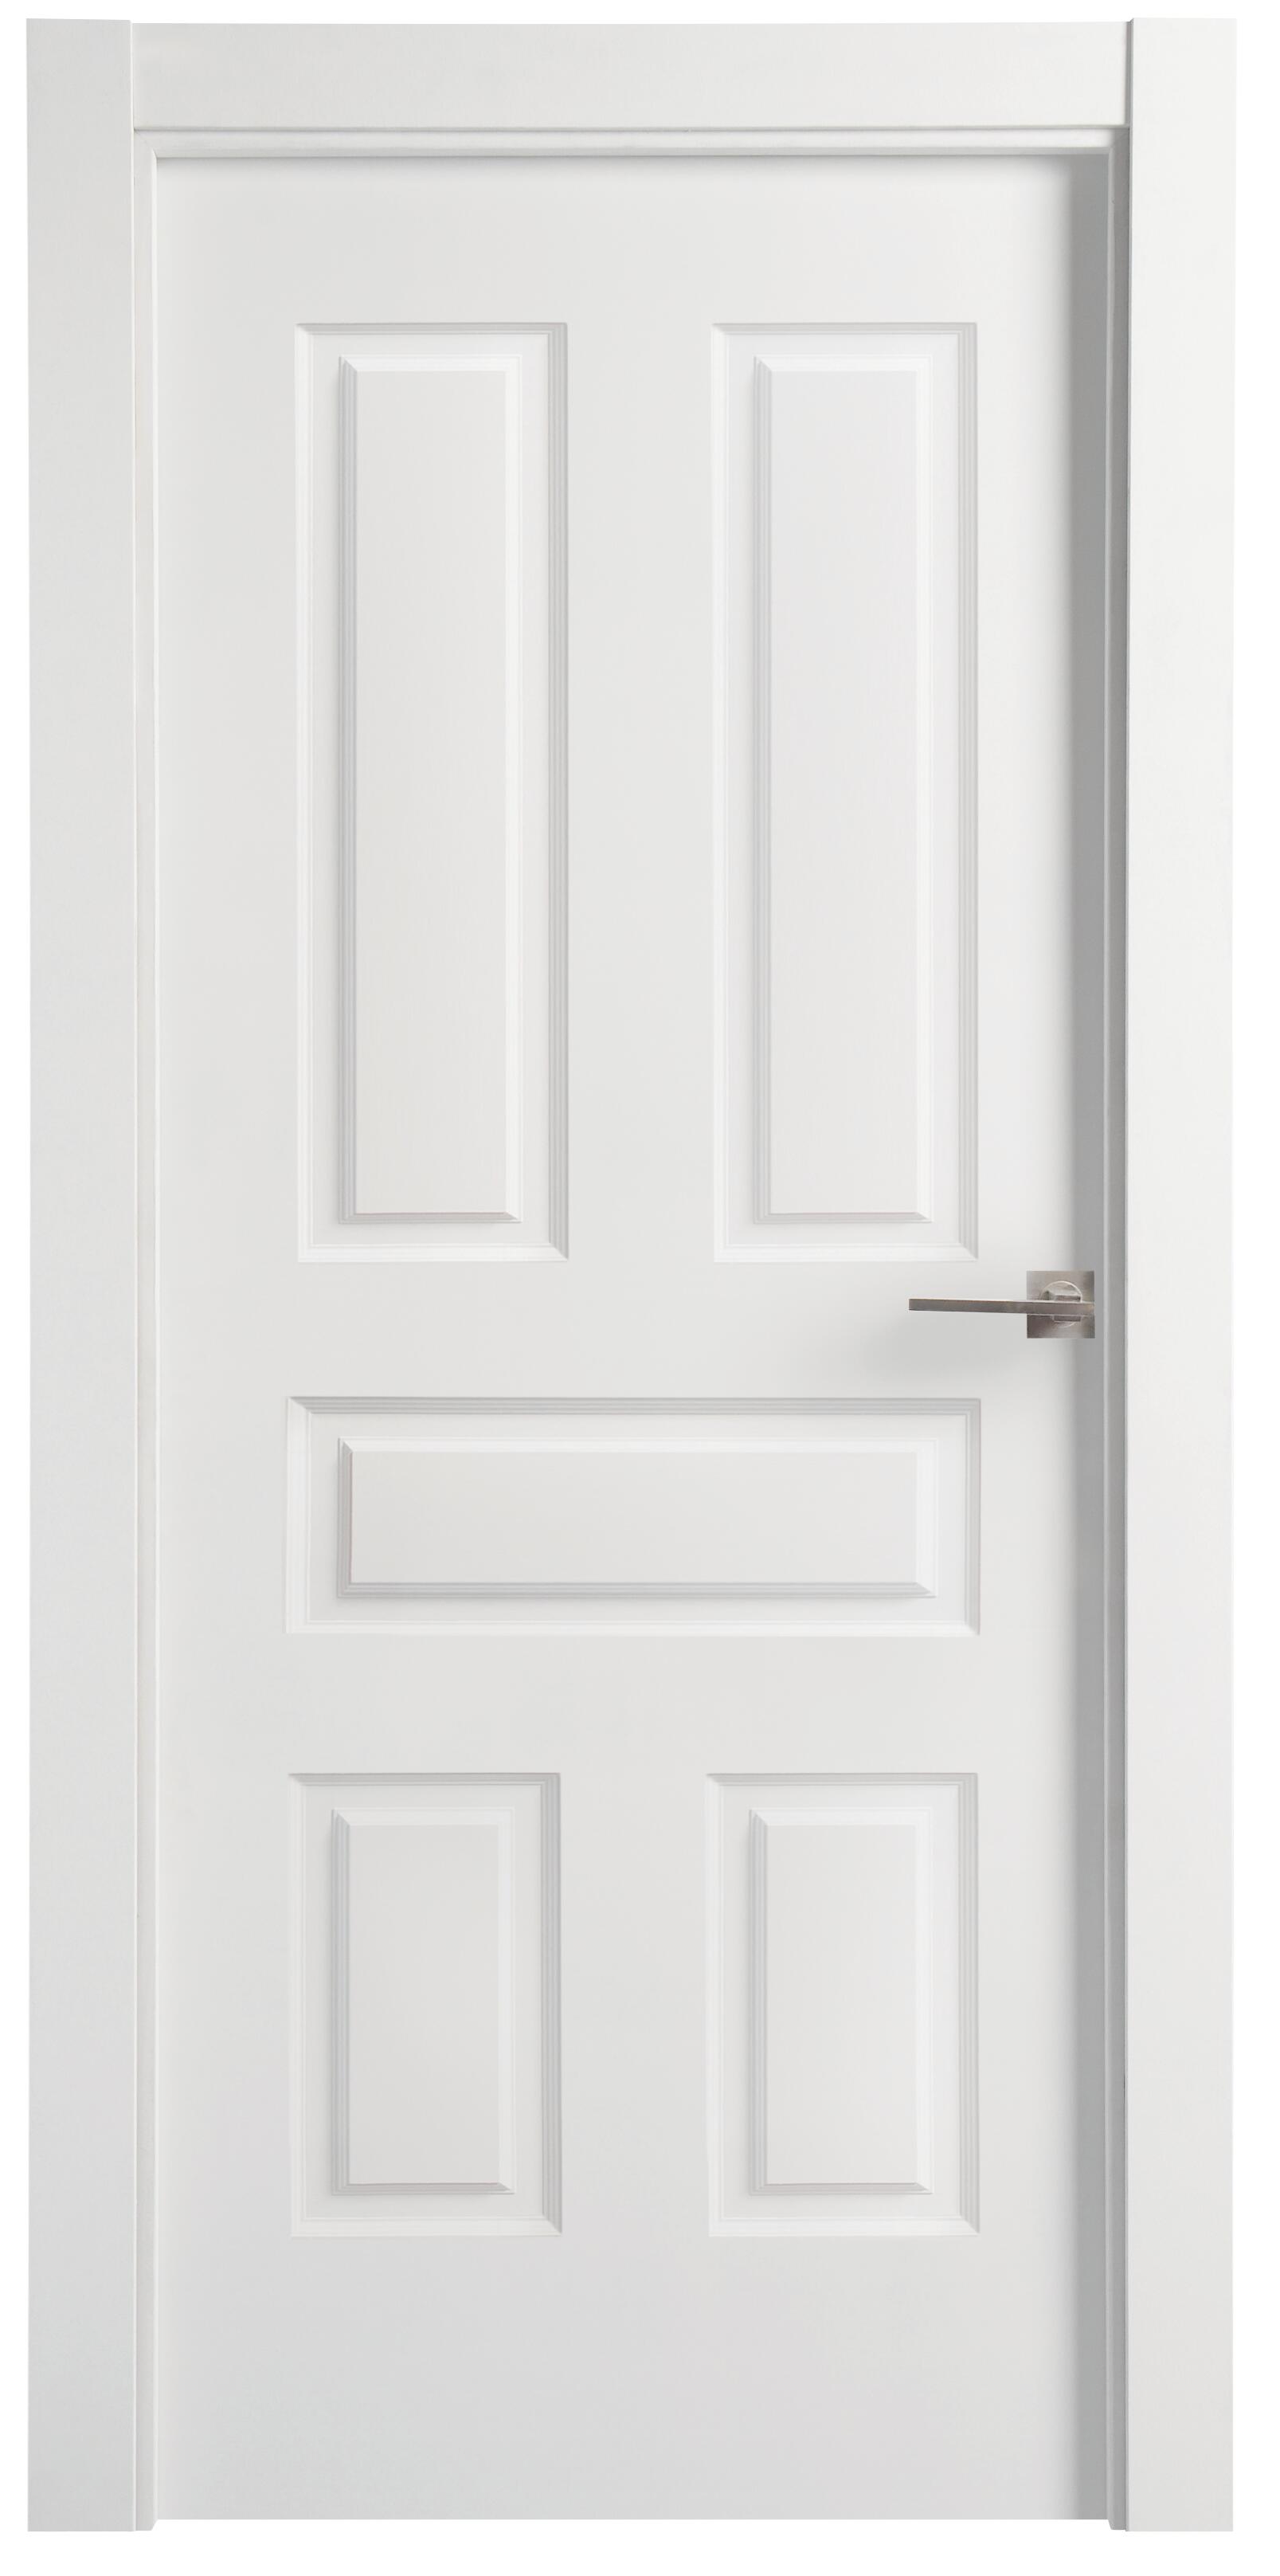 Puerta indiana plus blanco apertura izquierda de 9x62,5cm